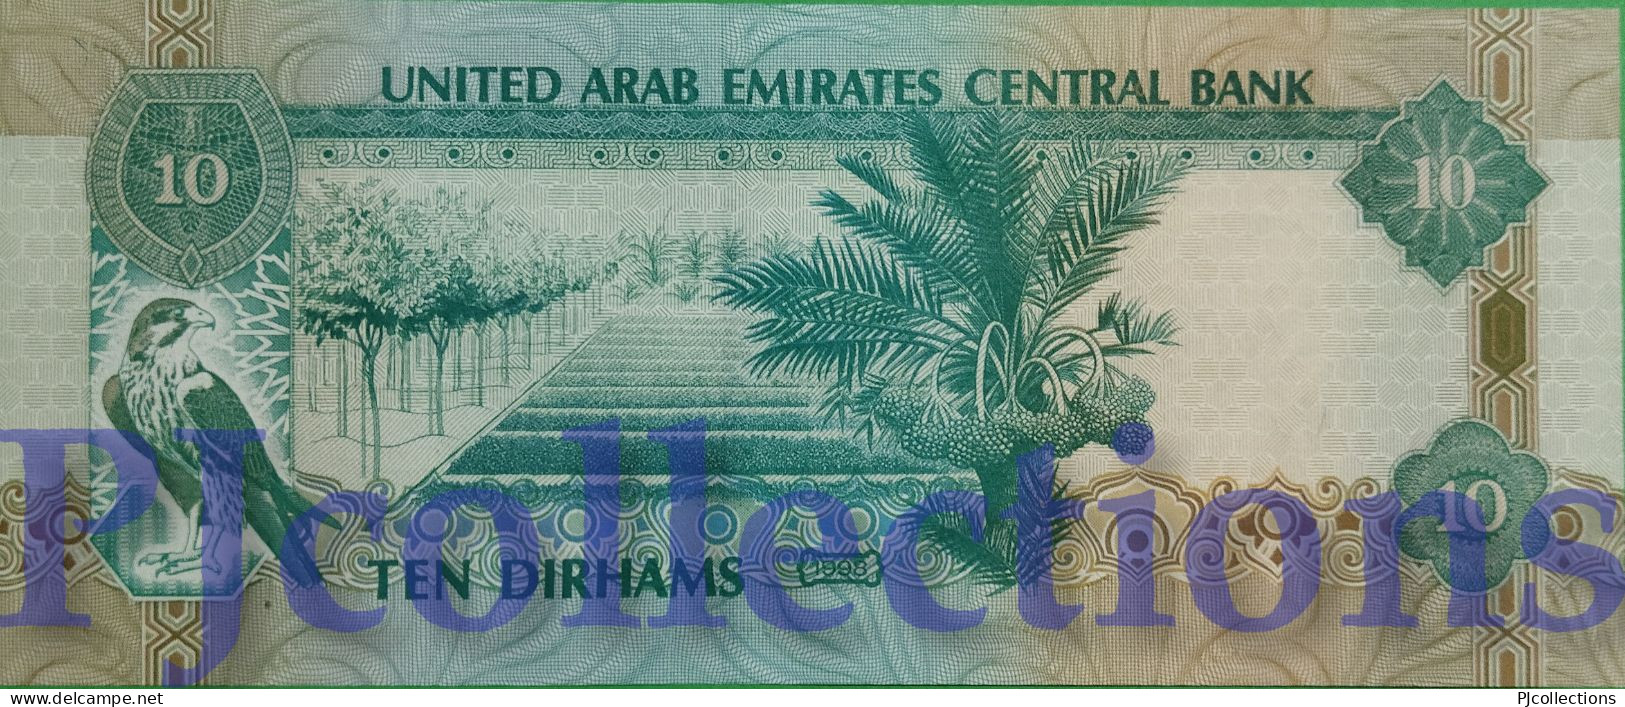 UNITED ARAB EMIRATES 10 DIRHAMS 1998 PICK 20a AU/UNC - Emirats Arabes Unis